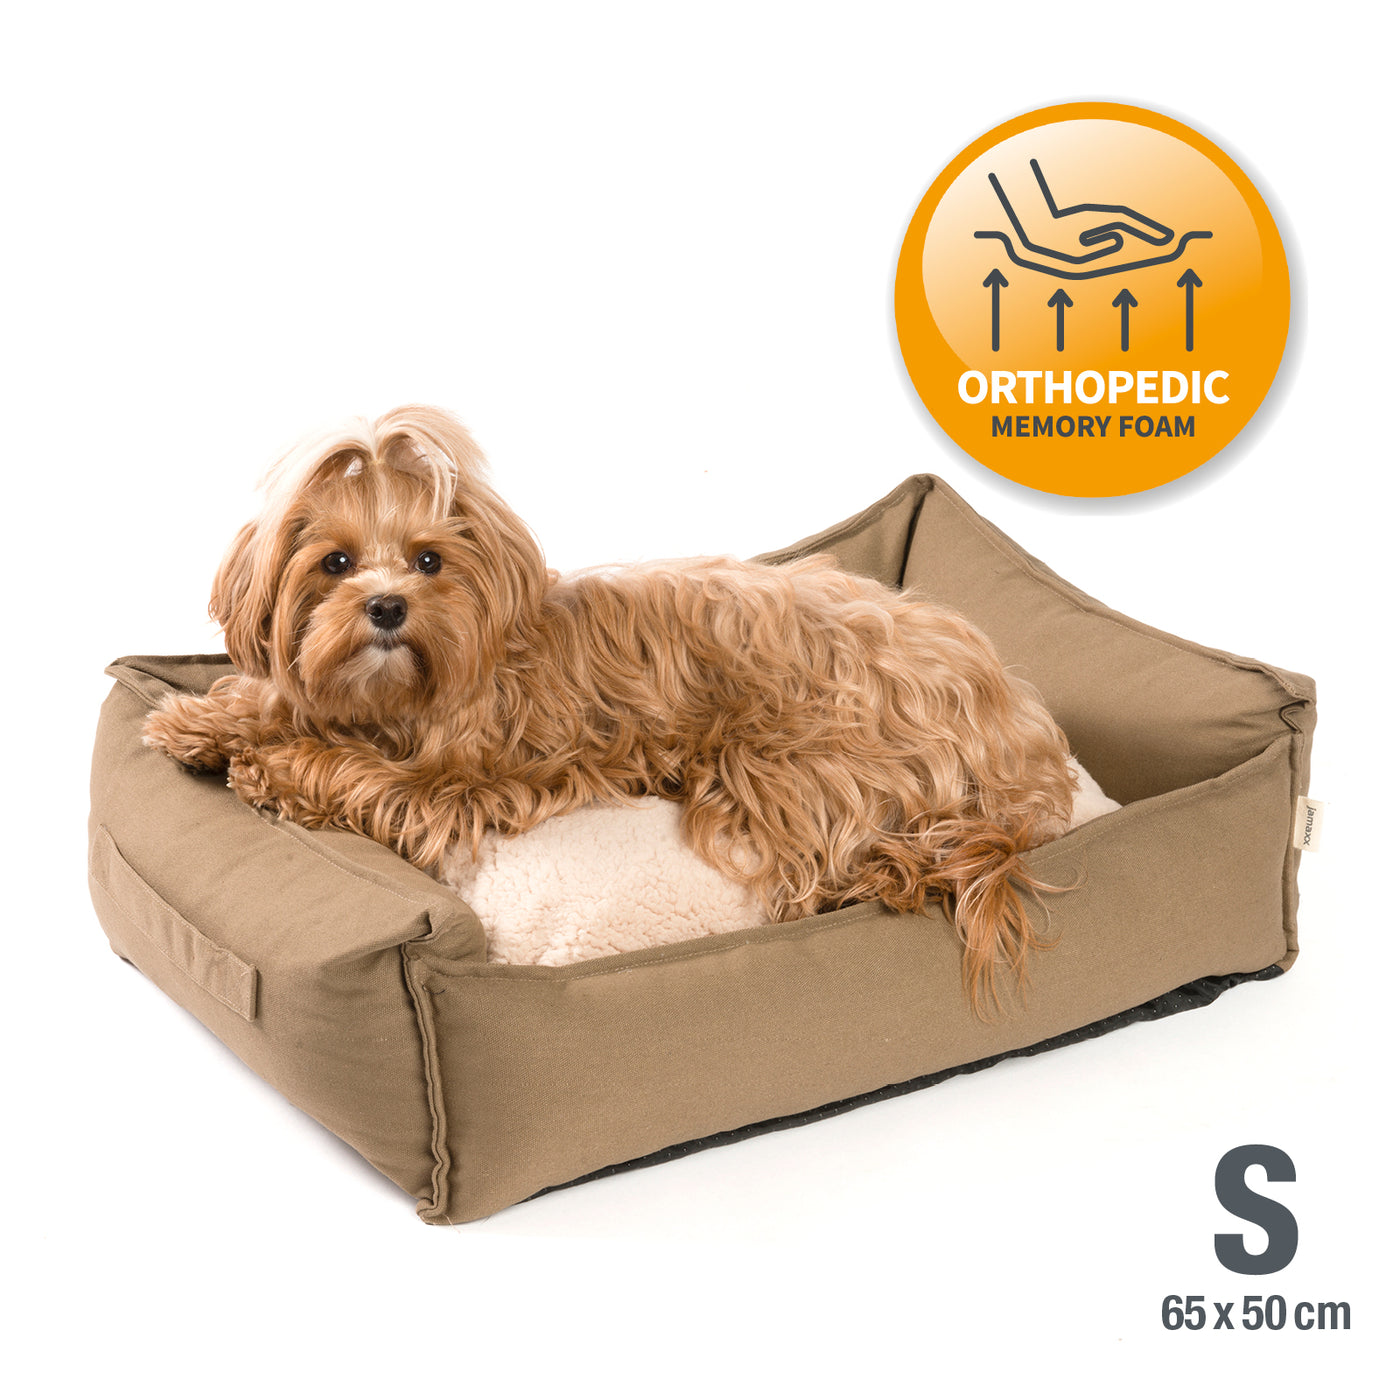 Hundebett / Hunde-Sofa mit Wendekissen, orthopädische Füllung, waschbar, Größe S